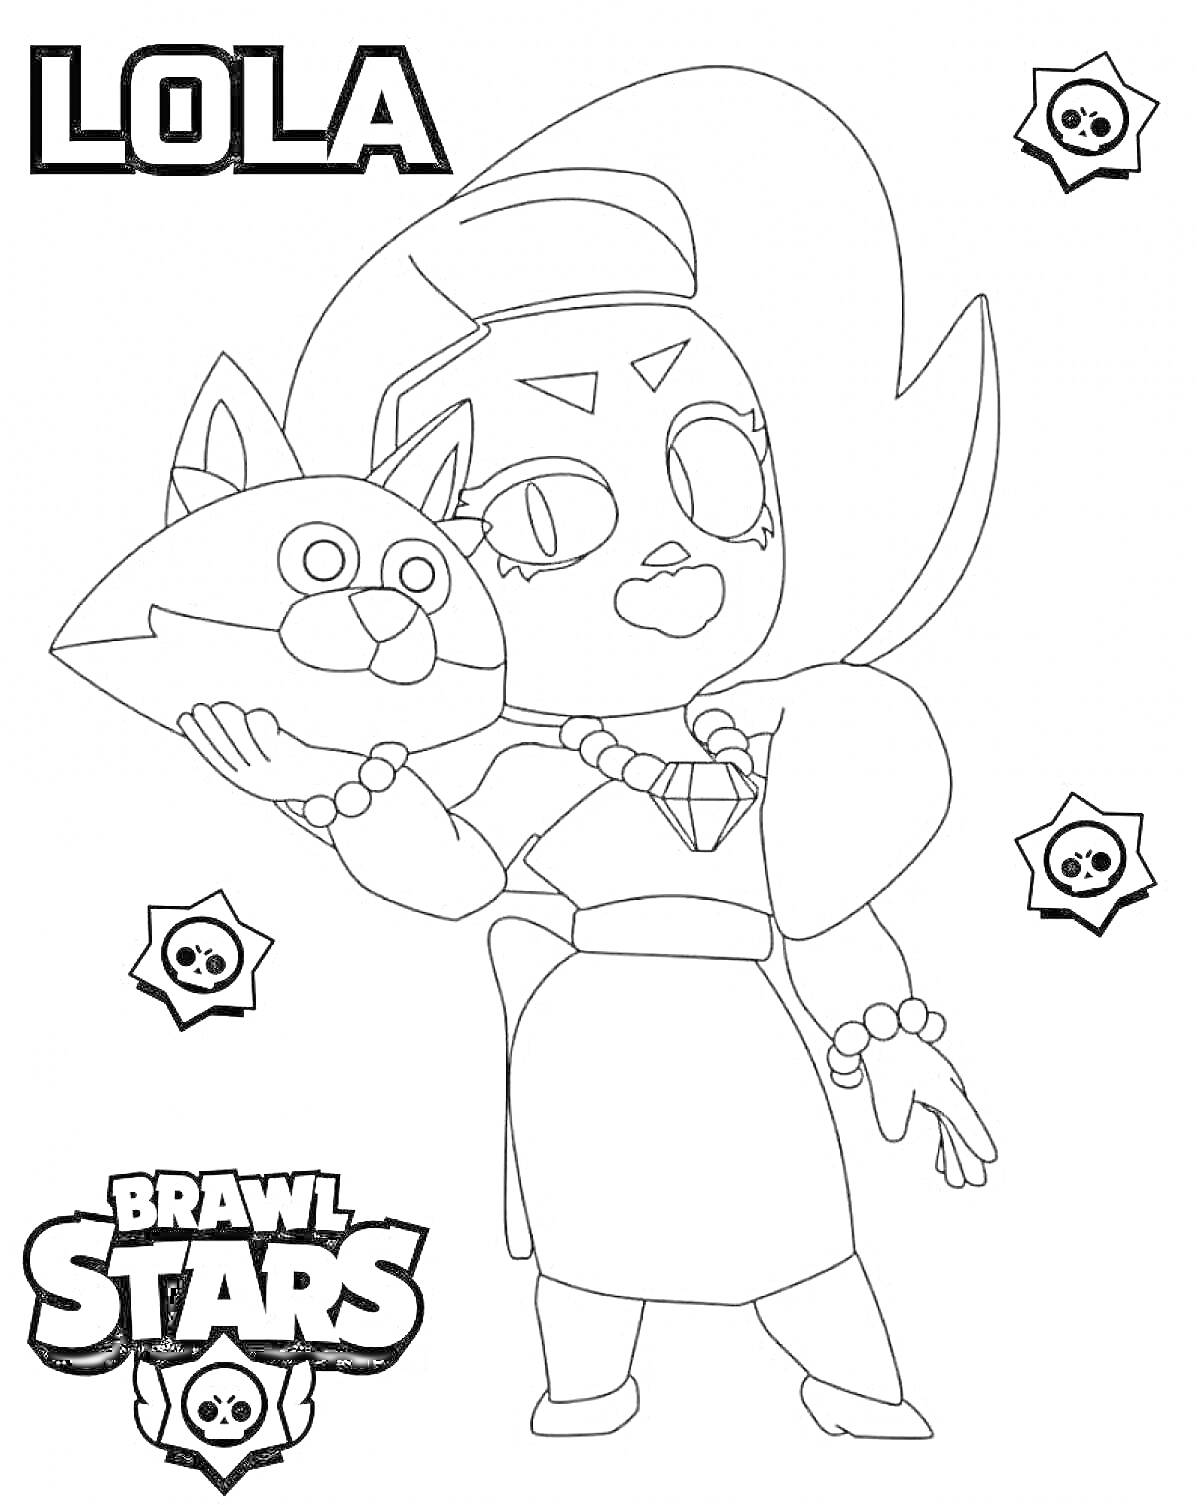 Раскраска Раскраска с персонажем Лола из игры Brawl Stars, держащим куклу-кошку, логотипом Brawl Stars, и значками черепа с костями.